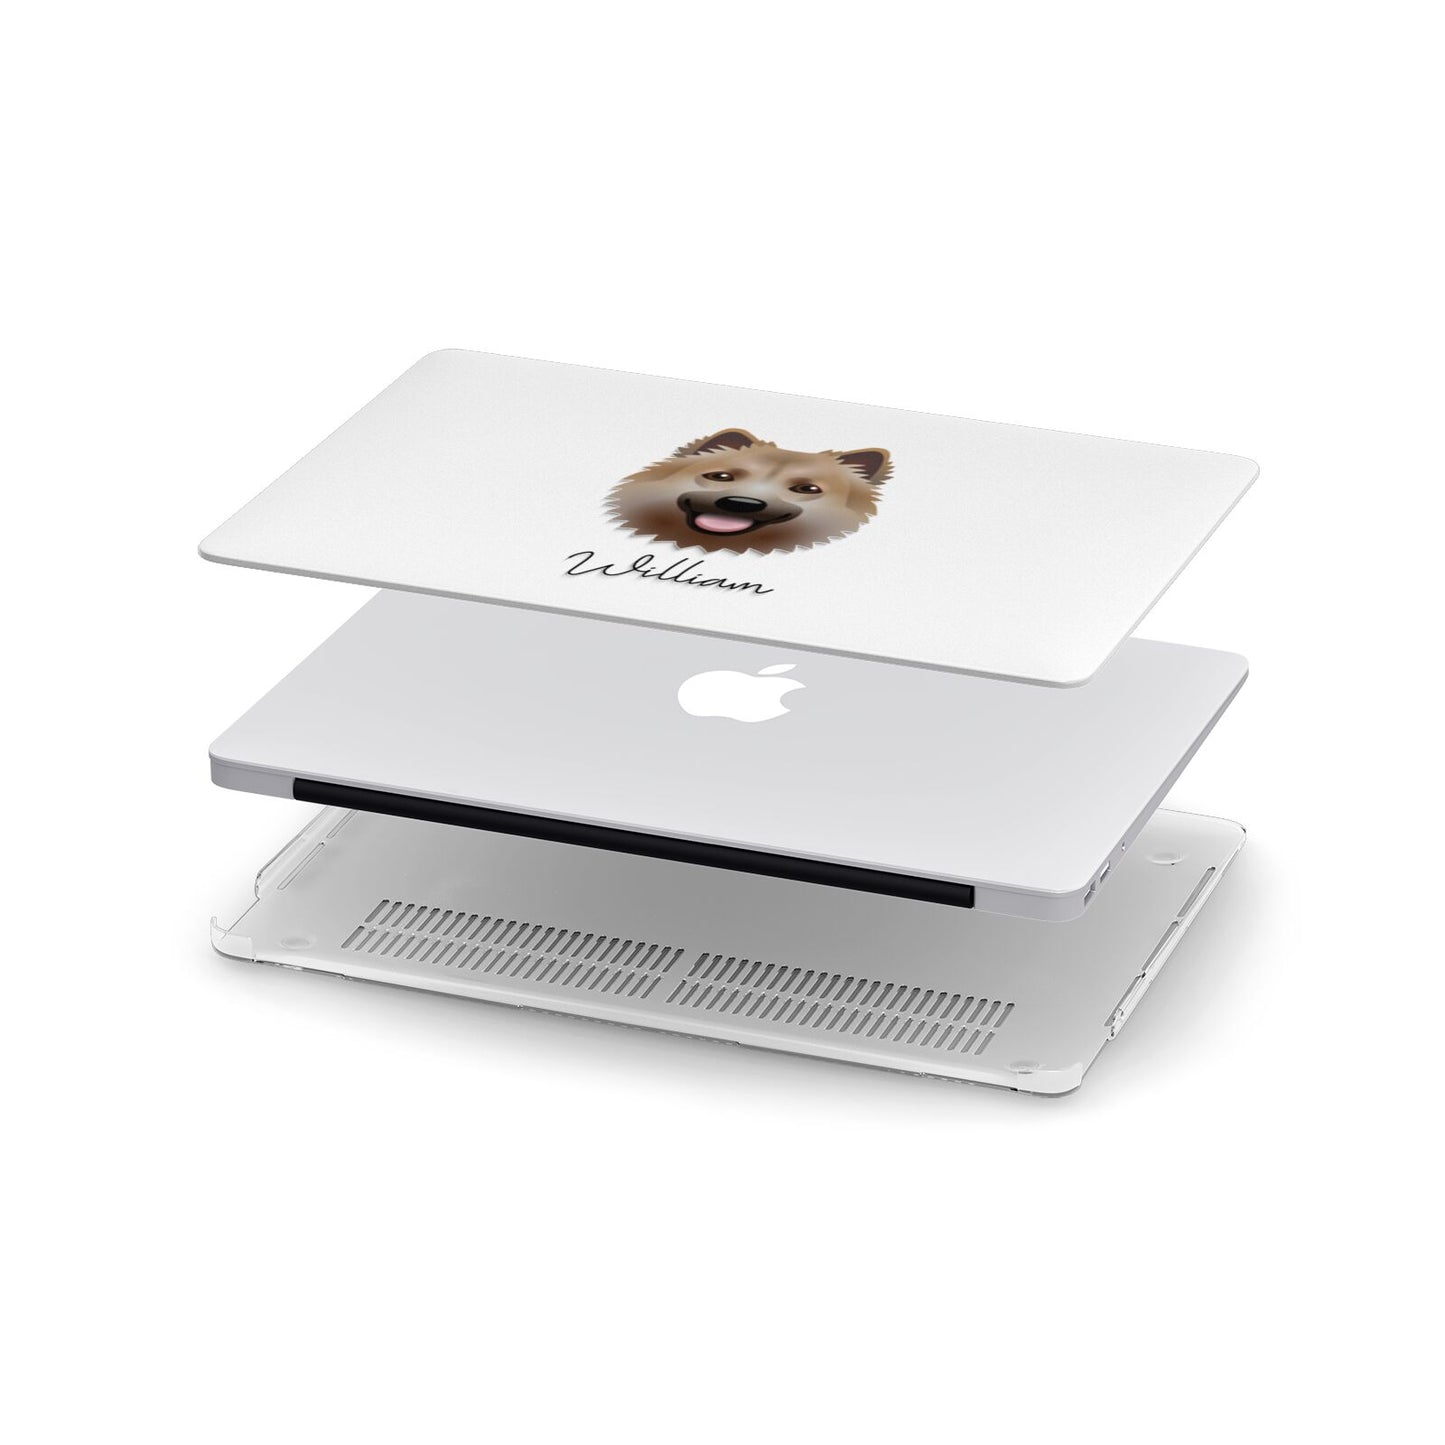 Icelandic Sheepdog Personalised Apple MacBook Case in Detail